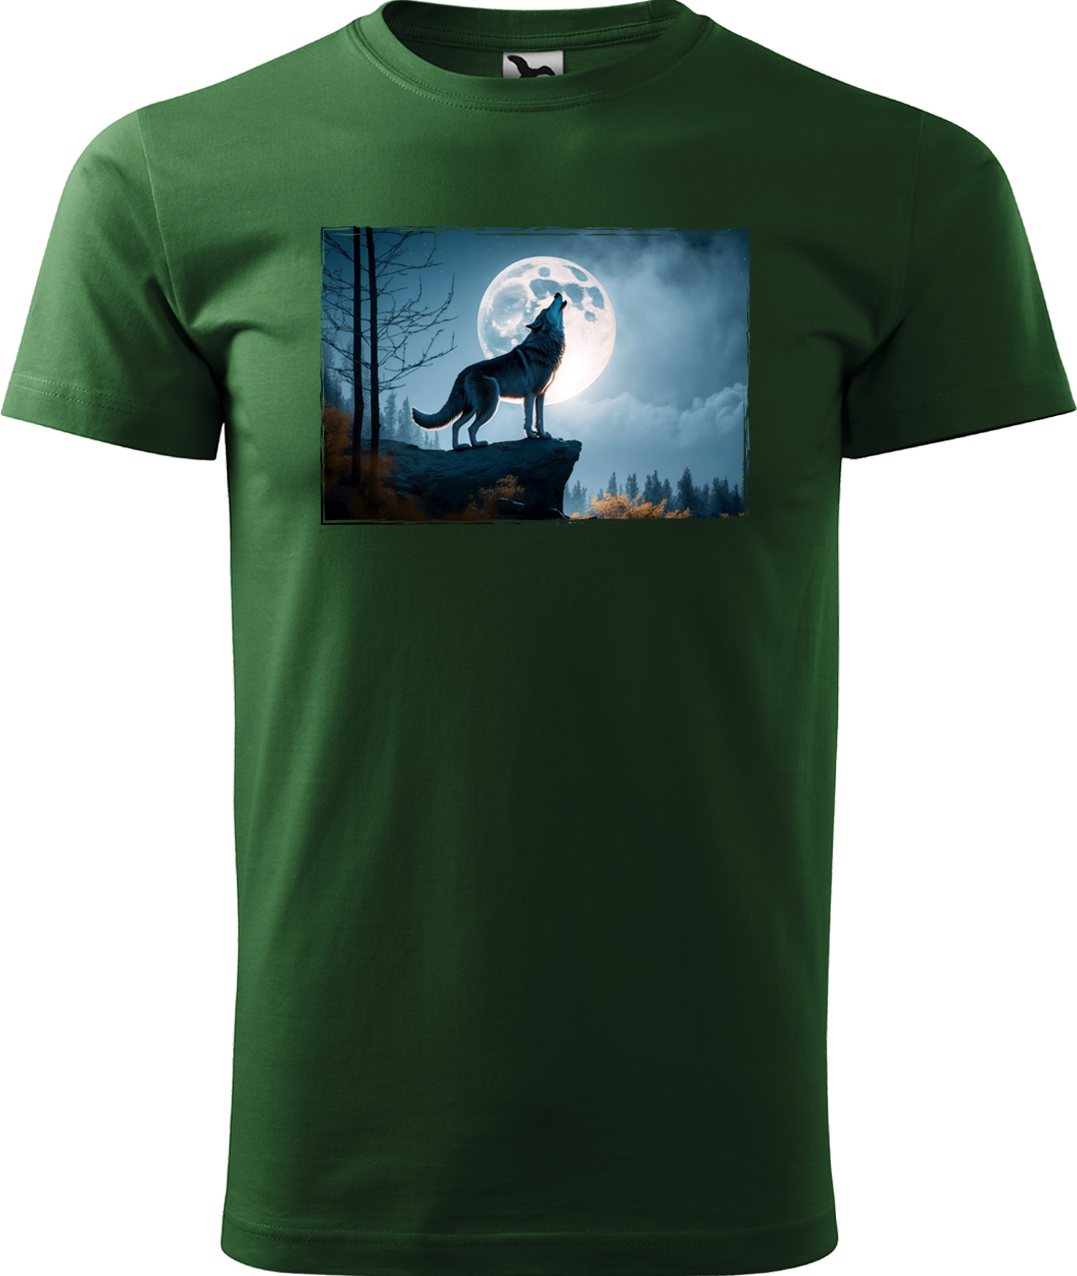 Pánské tričko s vlkem - Vyjící vlk Velikost: 3XL, Barva: Lahvově zelená (06)